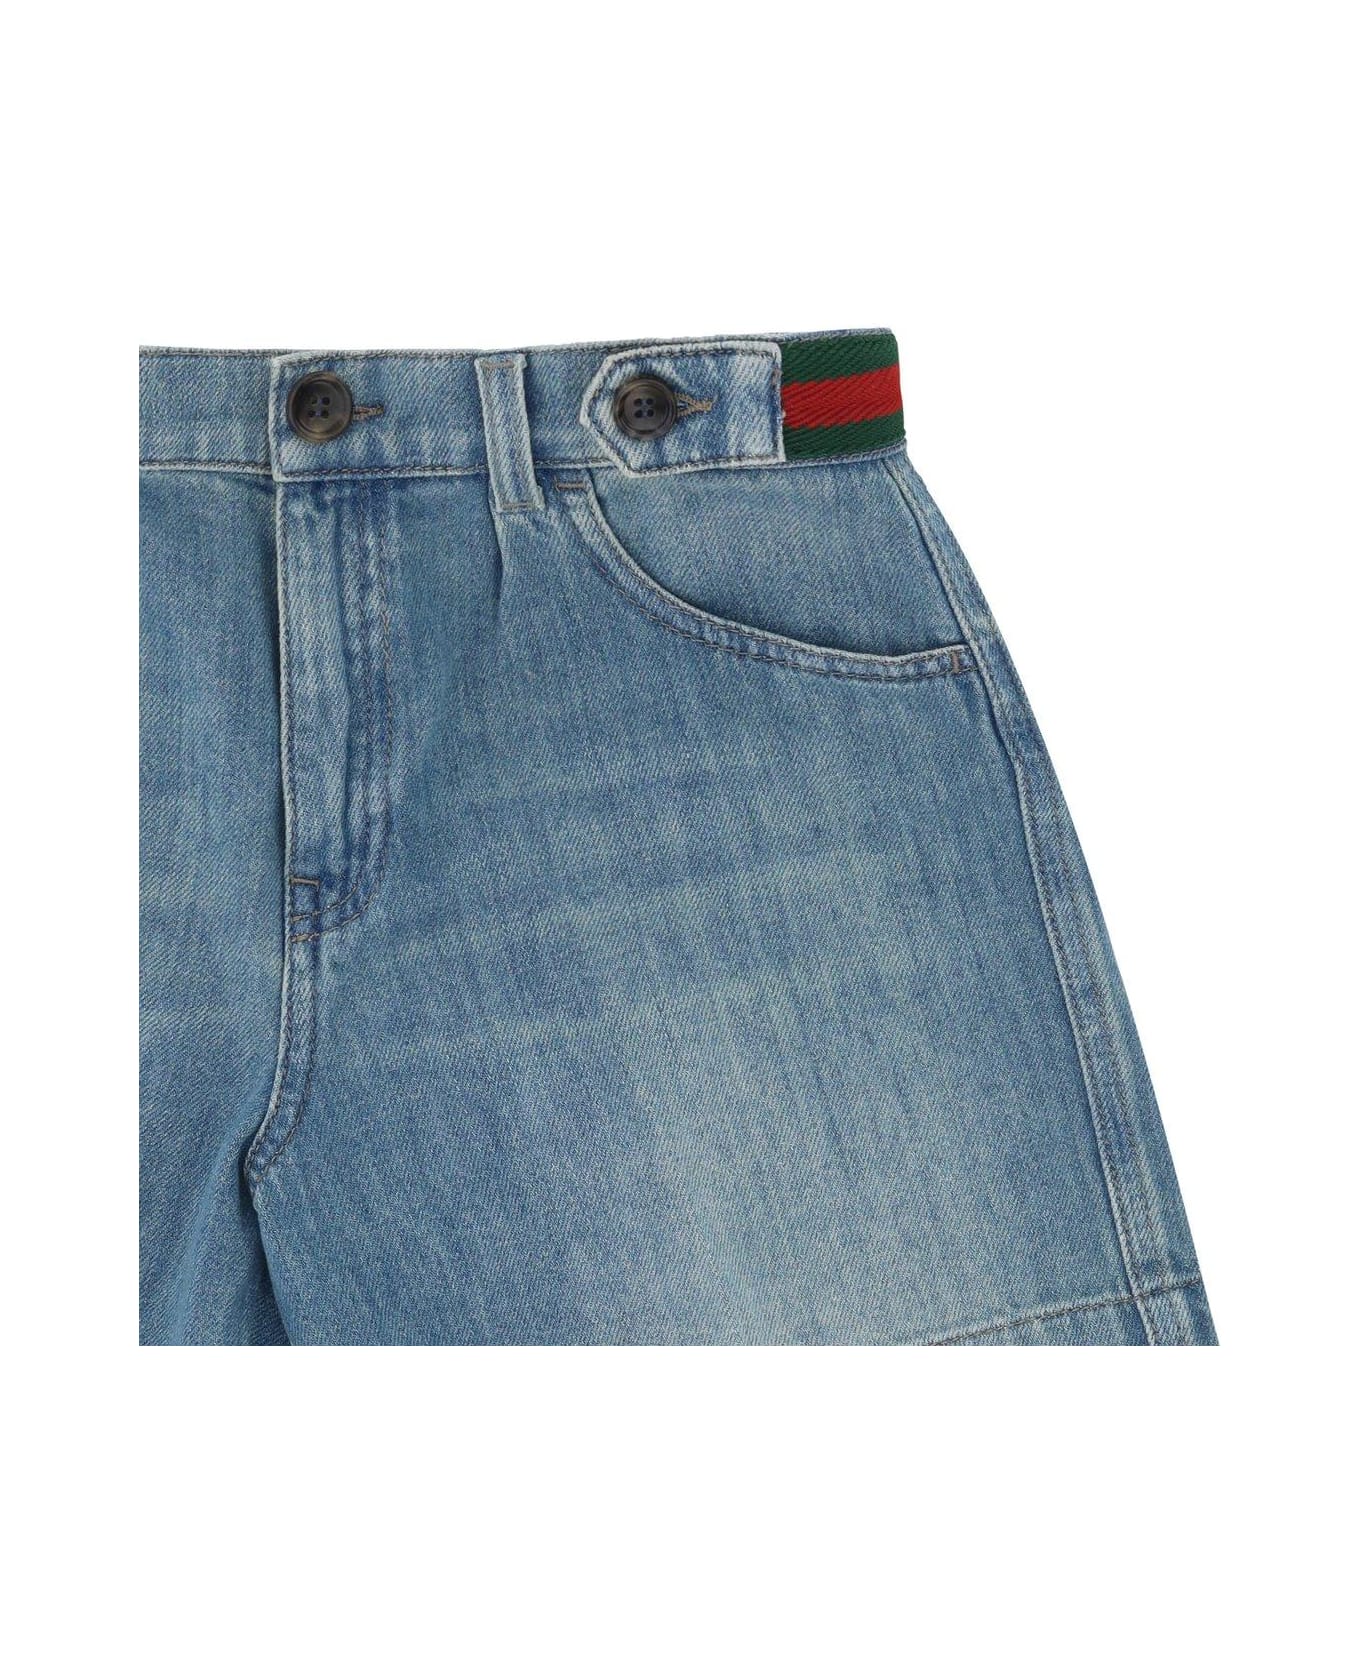 Gucci Denim Bermuda Shorts - Blue ボトムス